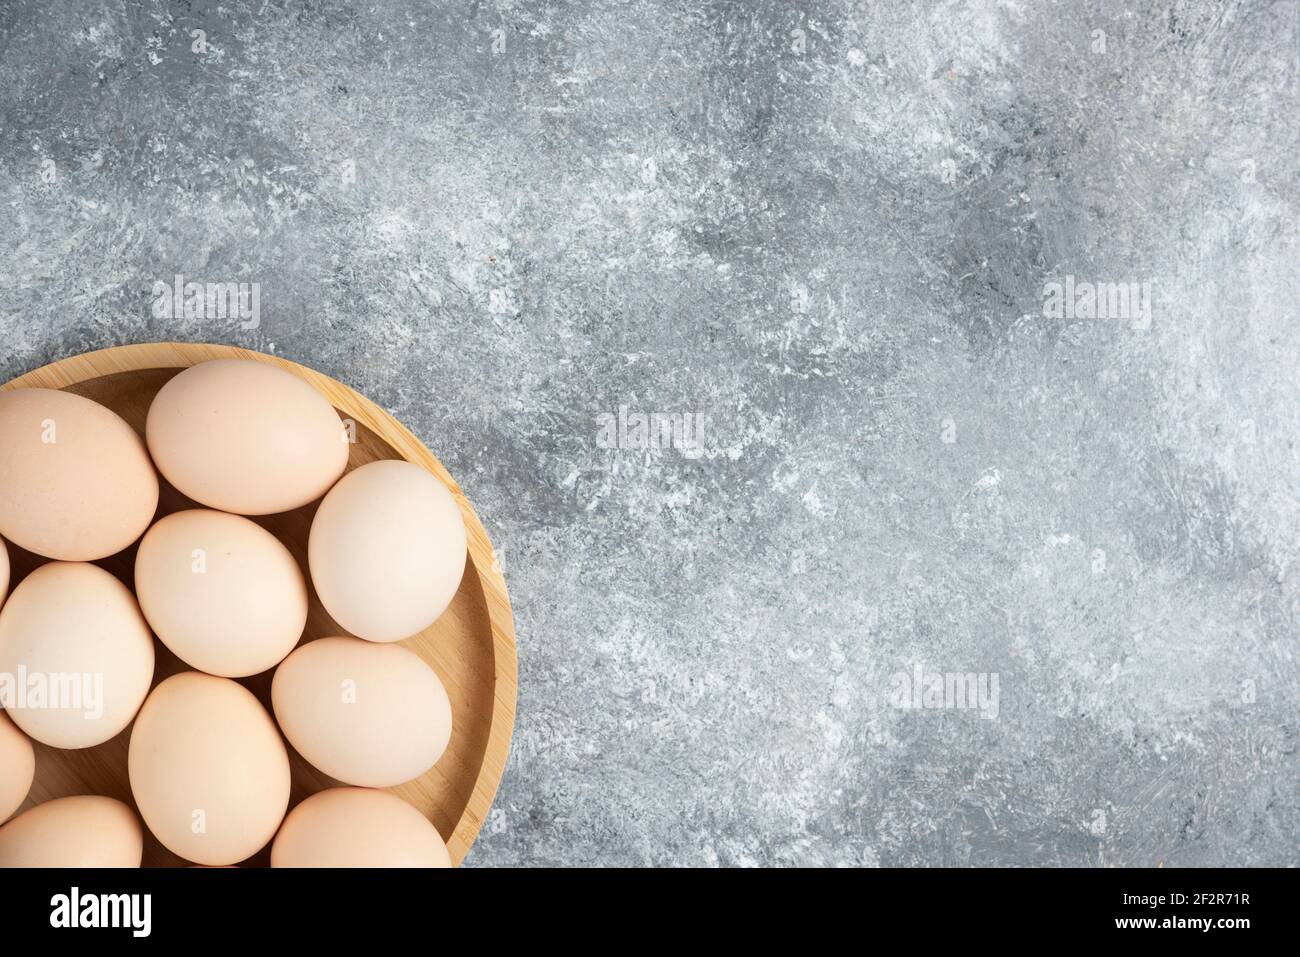 Holzplatte mit frischen Bio-rohen Eiern auf Marmoroberfläche Stockfoto